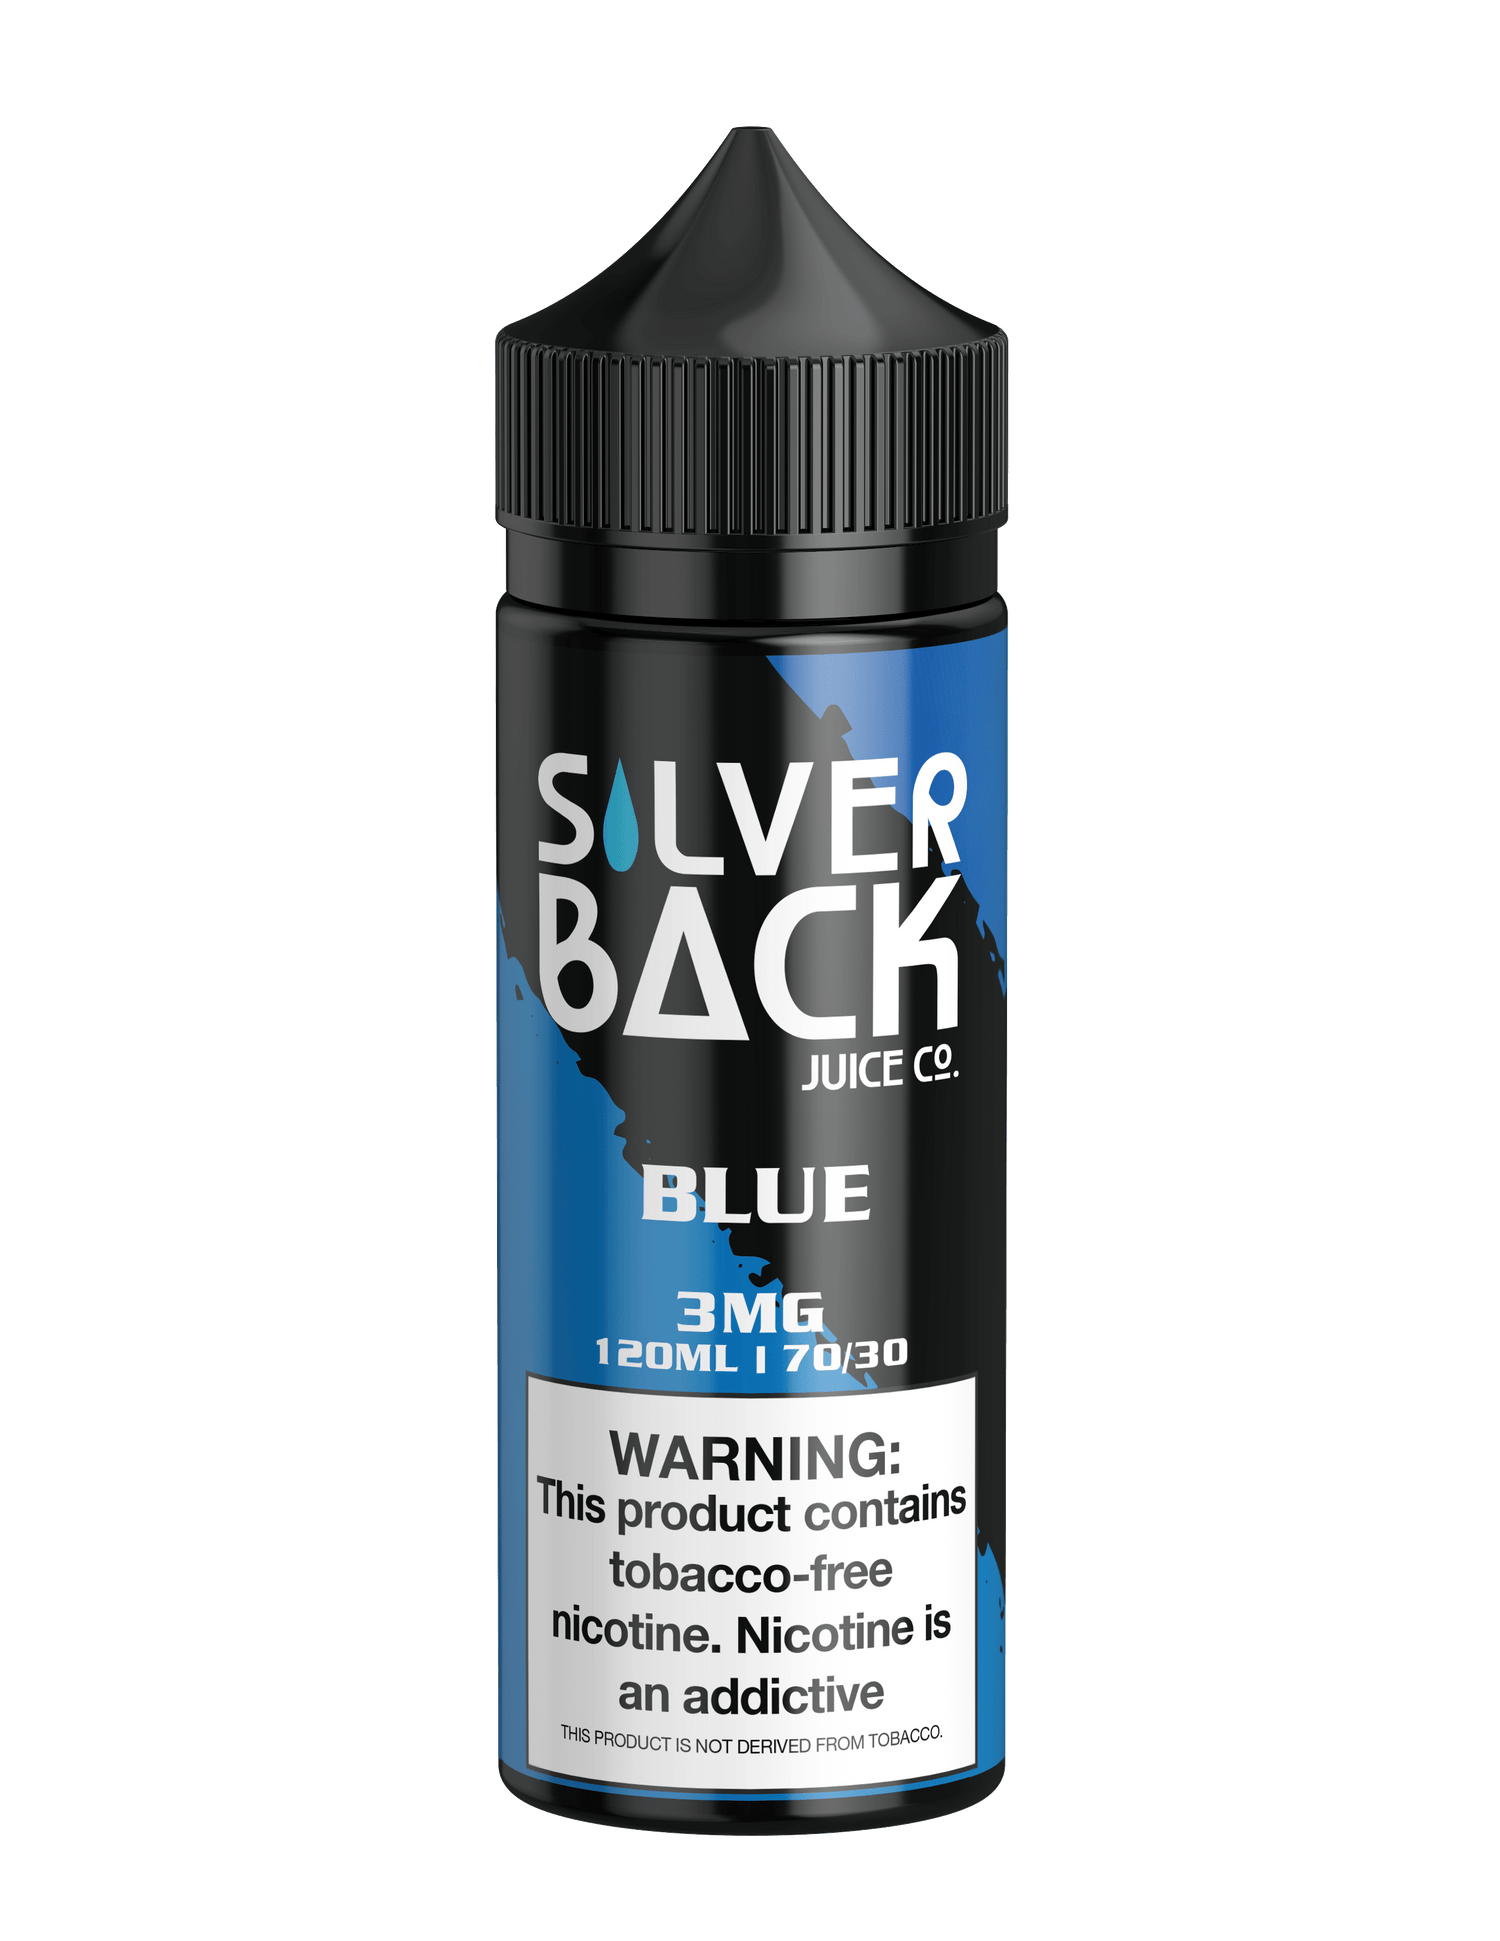 Blue - Silverback Juice Co. - 120mL